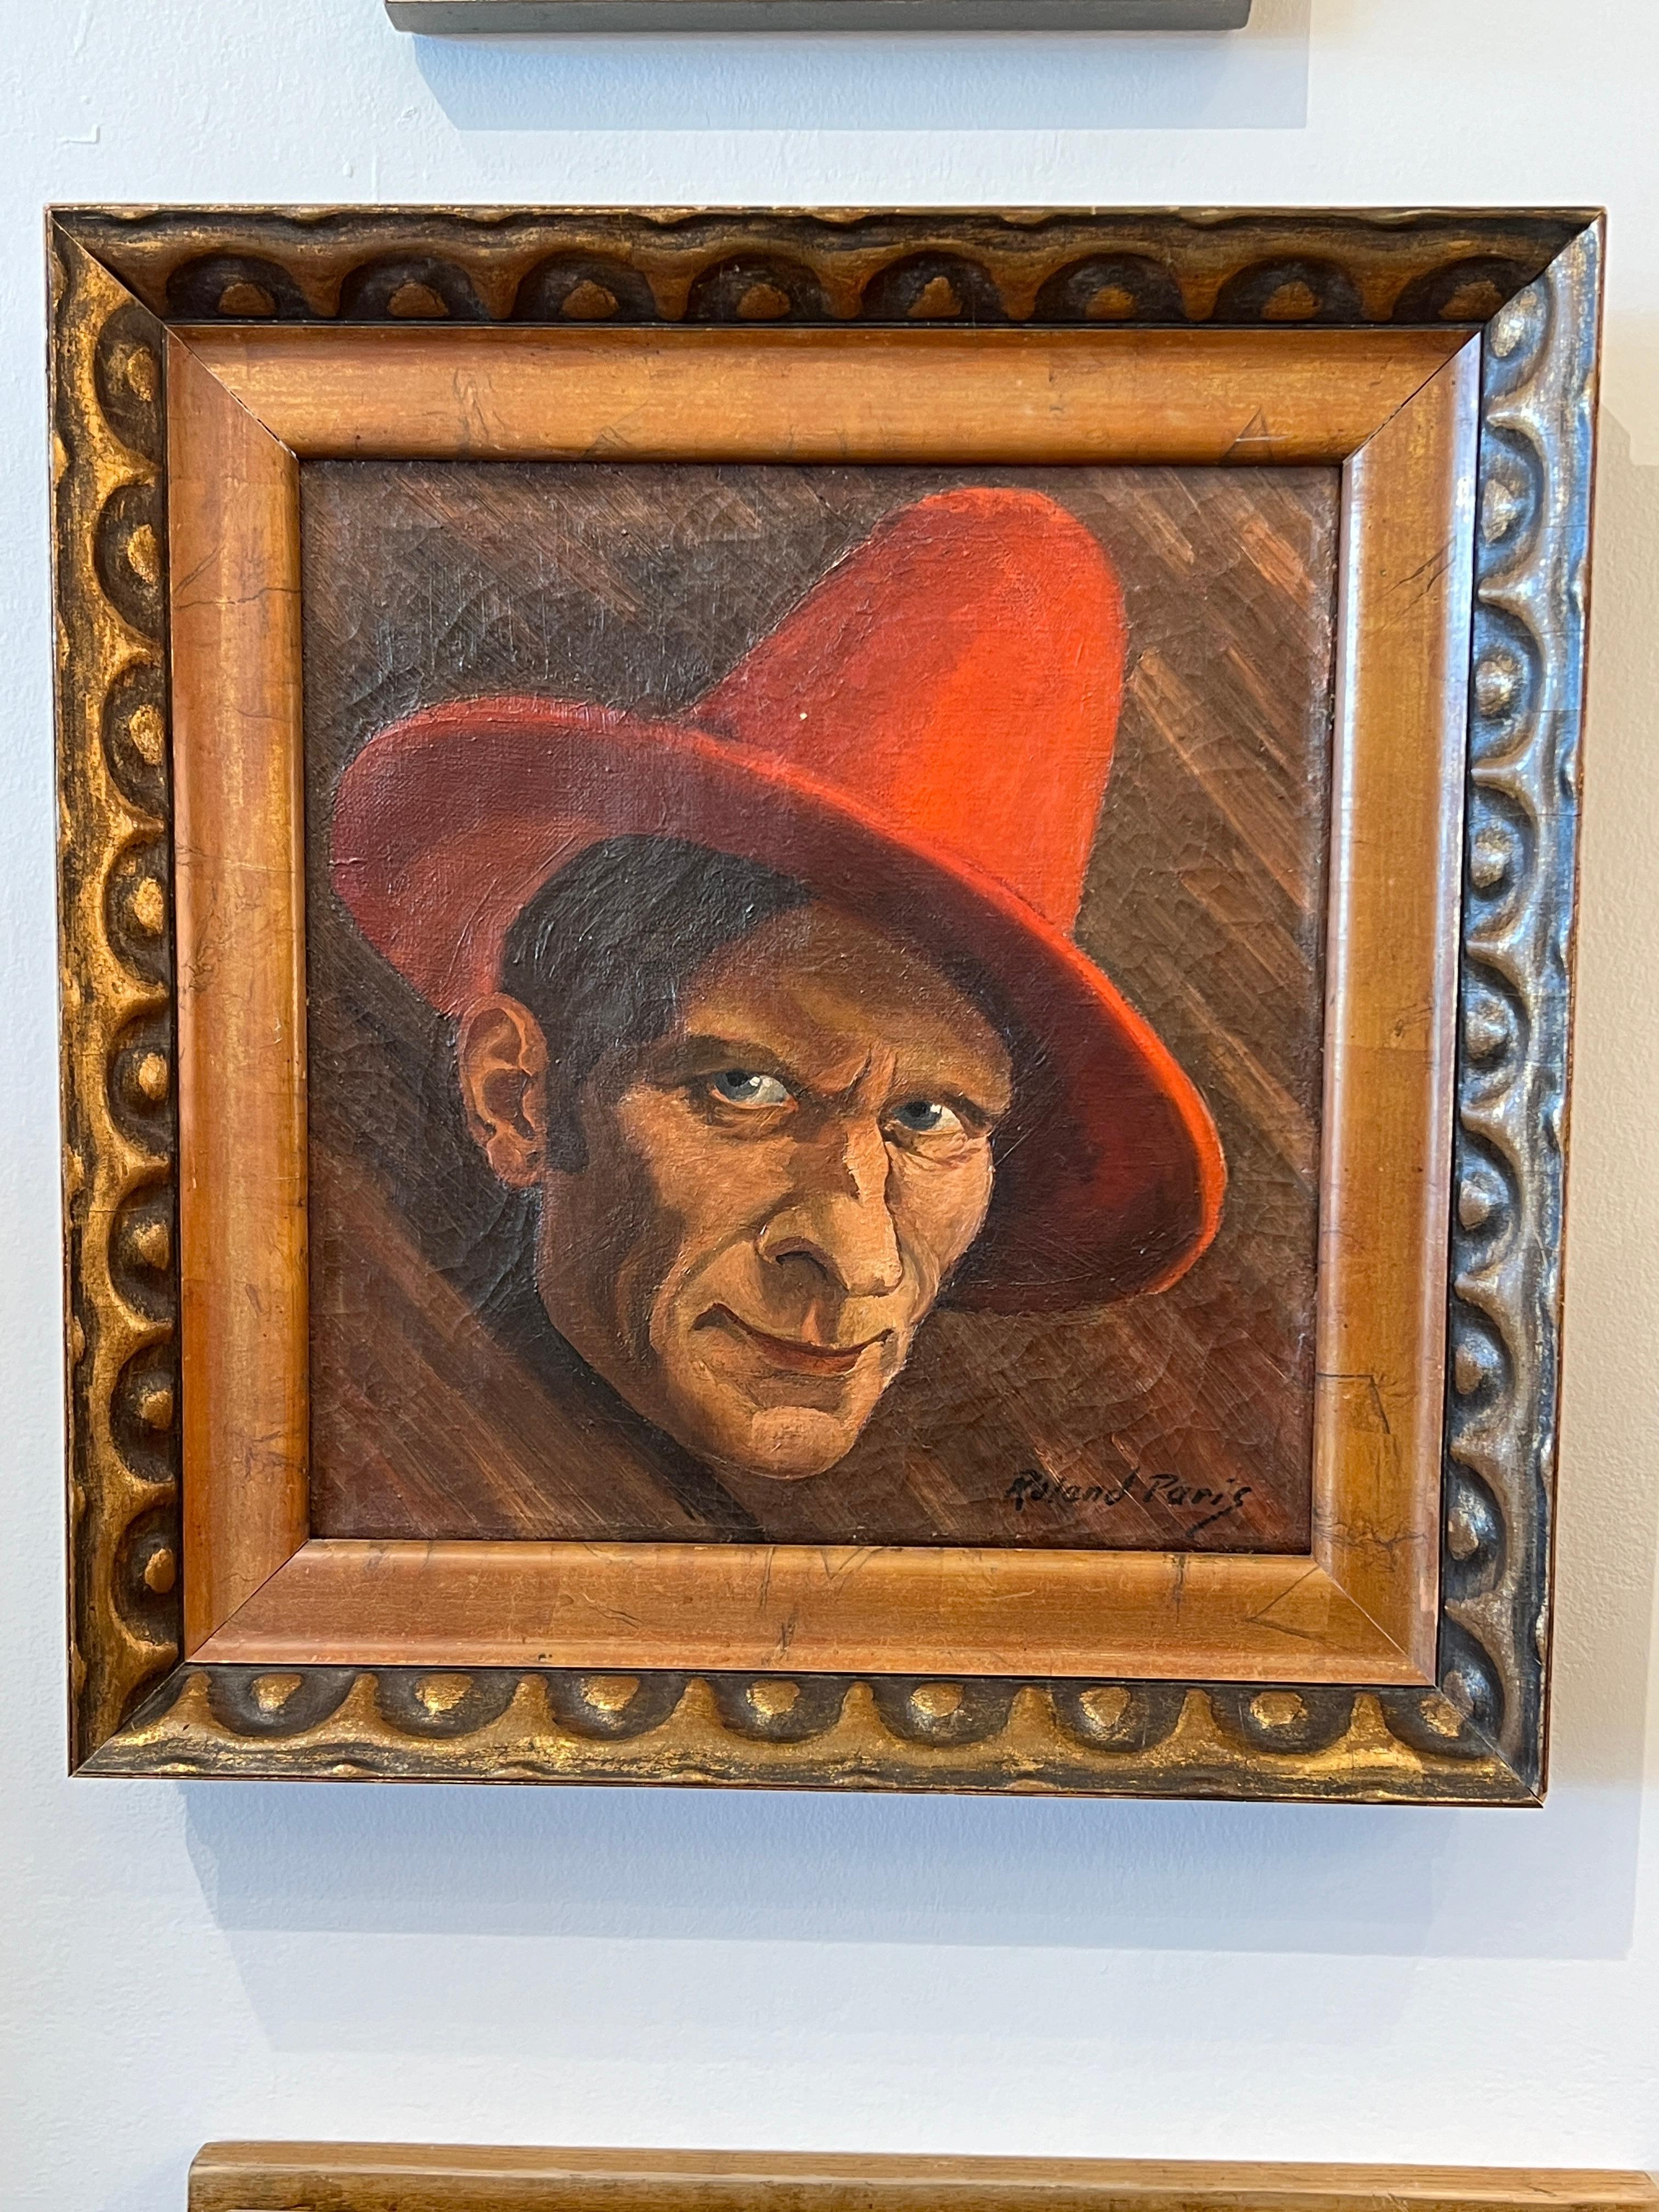 Self-Portrait de Roland Paris portant un chapeau rouge.

Signature : Roland Paris